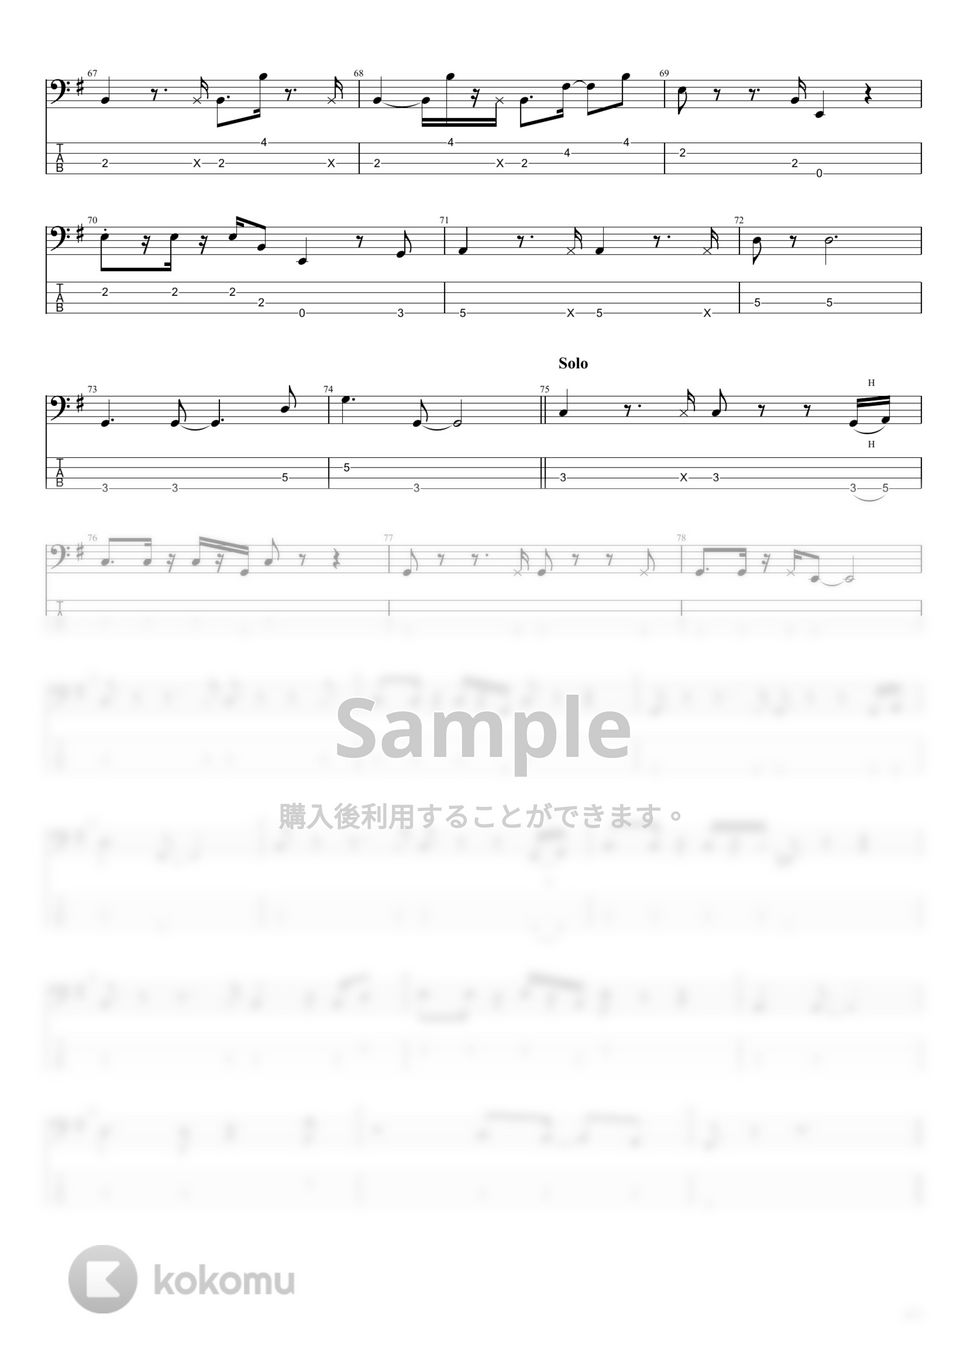 松田聖子 USA ライトコンビネーション 楽譜 【再入荷！】 5772円引き